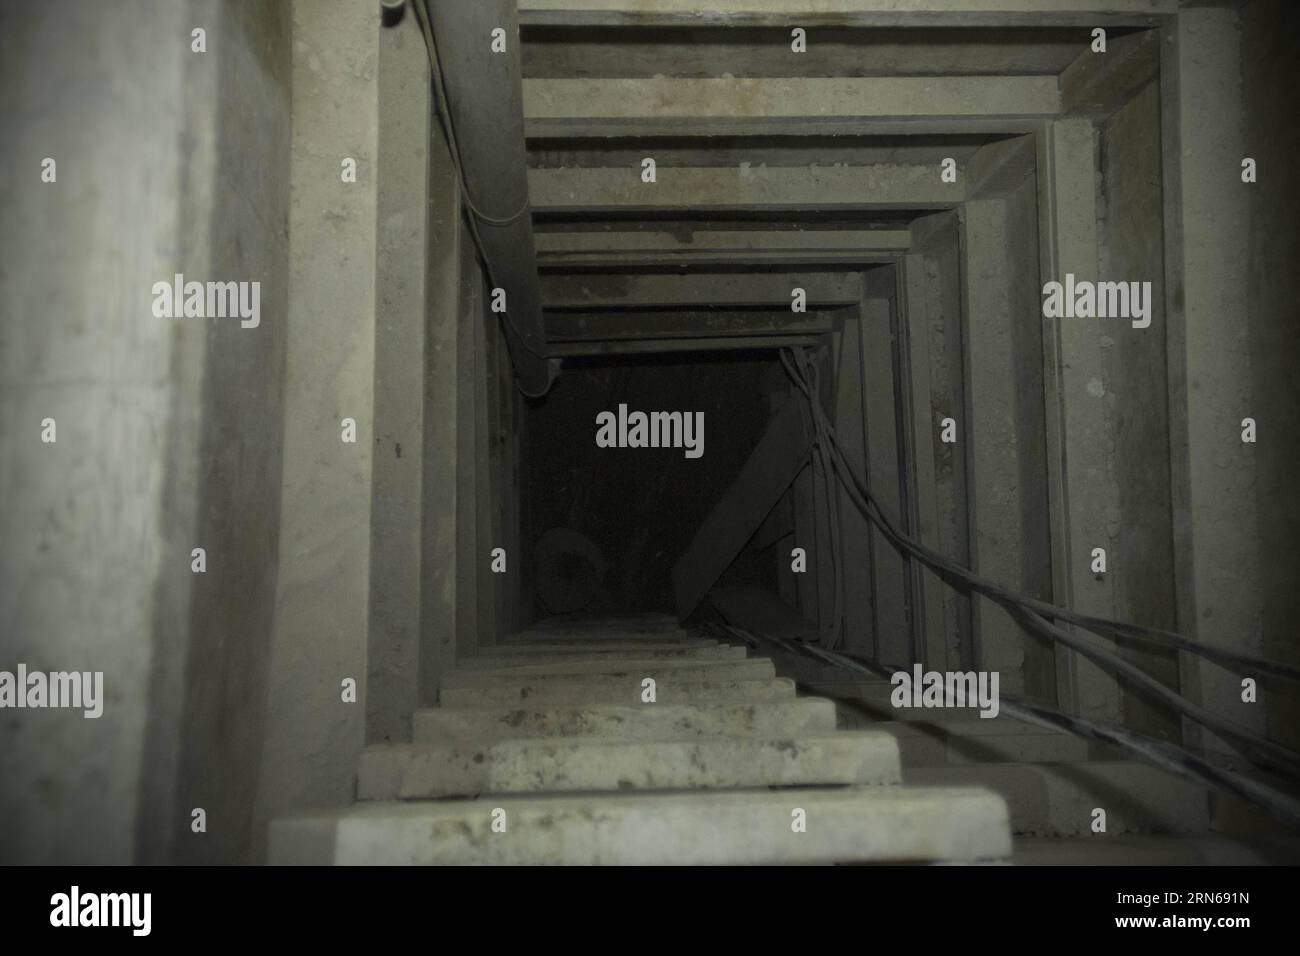 ALMOLOYA DE JUAREZ, le 15 juillet 2015-- Une échelle est vue à l'intérieur du tunnel, par lequel se serait échappé de prison le seigneur de la drogue du Mexique, Joaquin El Chapo Guzman, à Almoloya de Juarez, à la périphérie de Mexico, Mexique, le 15 juillet 2015. Guzman, chef du cartel de la drogue de Sinaloa, a disparu samedi soir de la prison de haute sécurité Altiplano à l'extérieur de Mexico, selon la Commission de sécurité nationale. MEXICO-ALMOLOYA DE JUAREZ-GUZMAN AlejandroxAyala PUBLICATIONxNOTxINxCHN ALMOLOYA de Juarez juillet 15 2015 une ÉCHELLE EST Lacs à l'intérieur du tunnel par lequel se serait échappé Banque D'Images